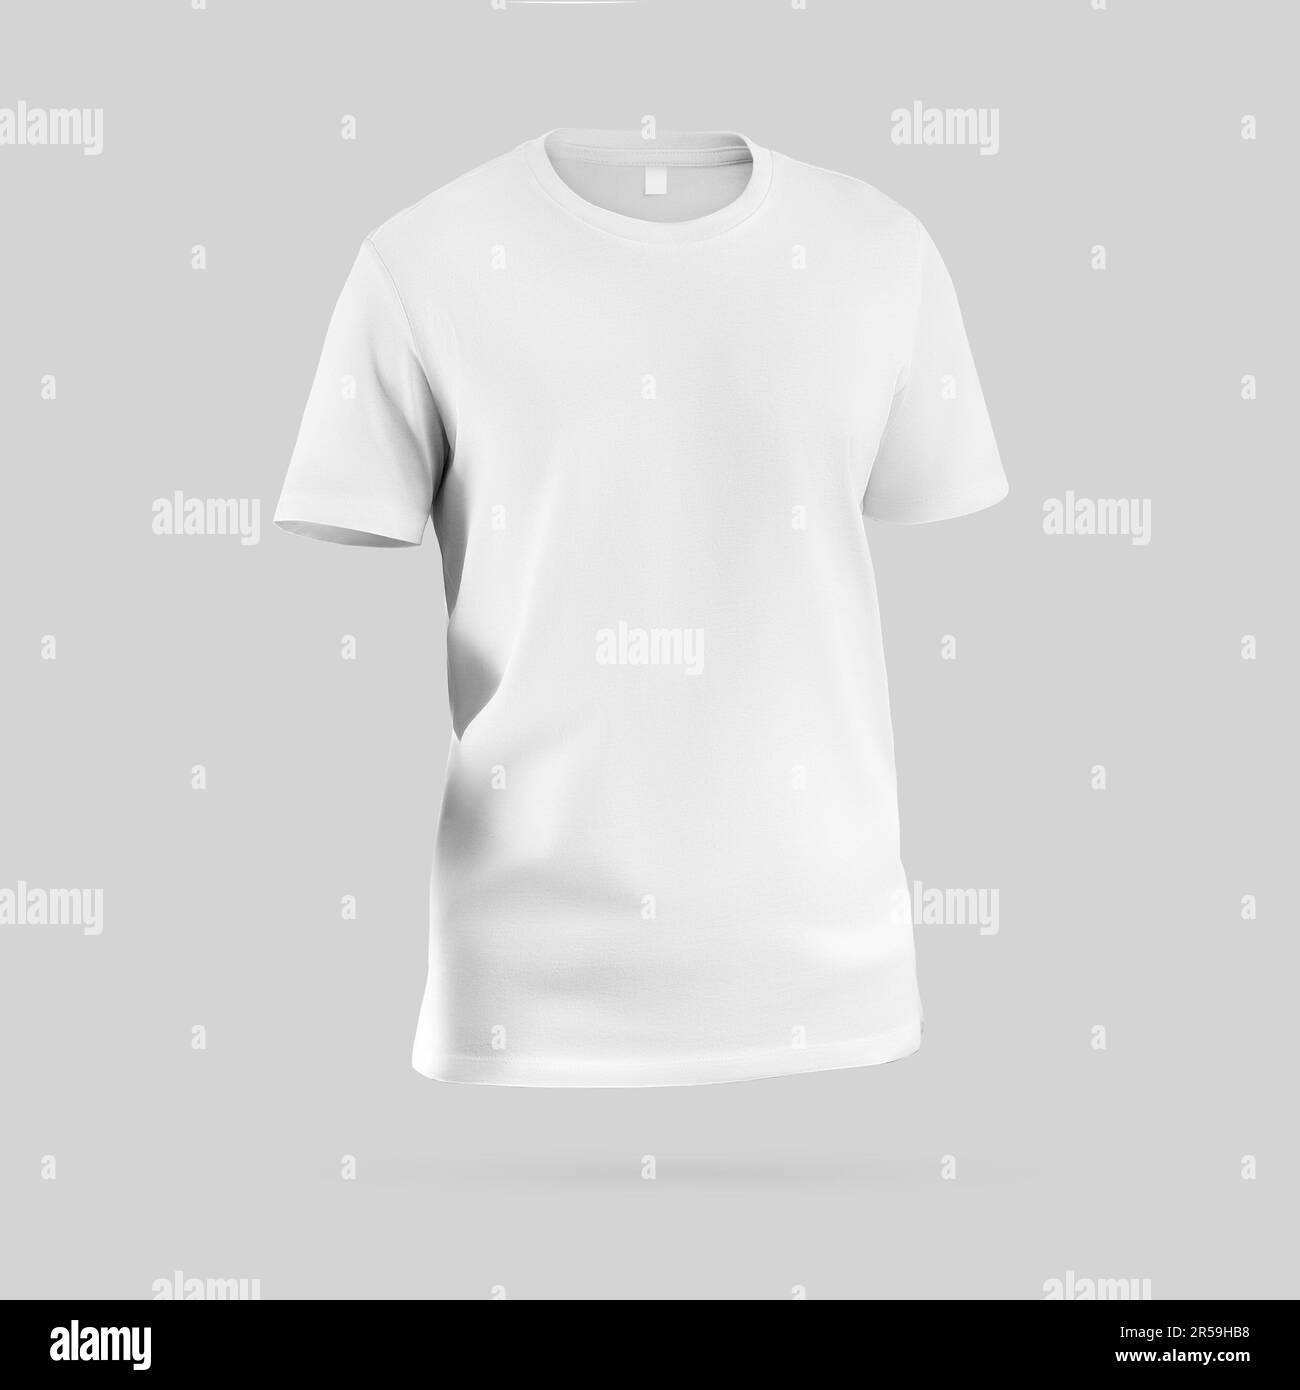 Moda bianco t-shirt template 3D rendering, abbigliamento uomo con etichetta, collo rotondo, per design, stampa, marchio. Elegante mockup camicia isolato sul retro Foto Stock